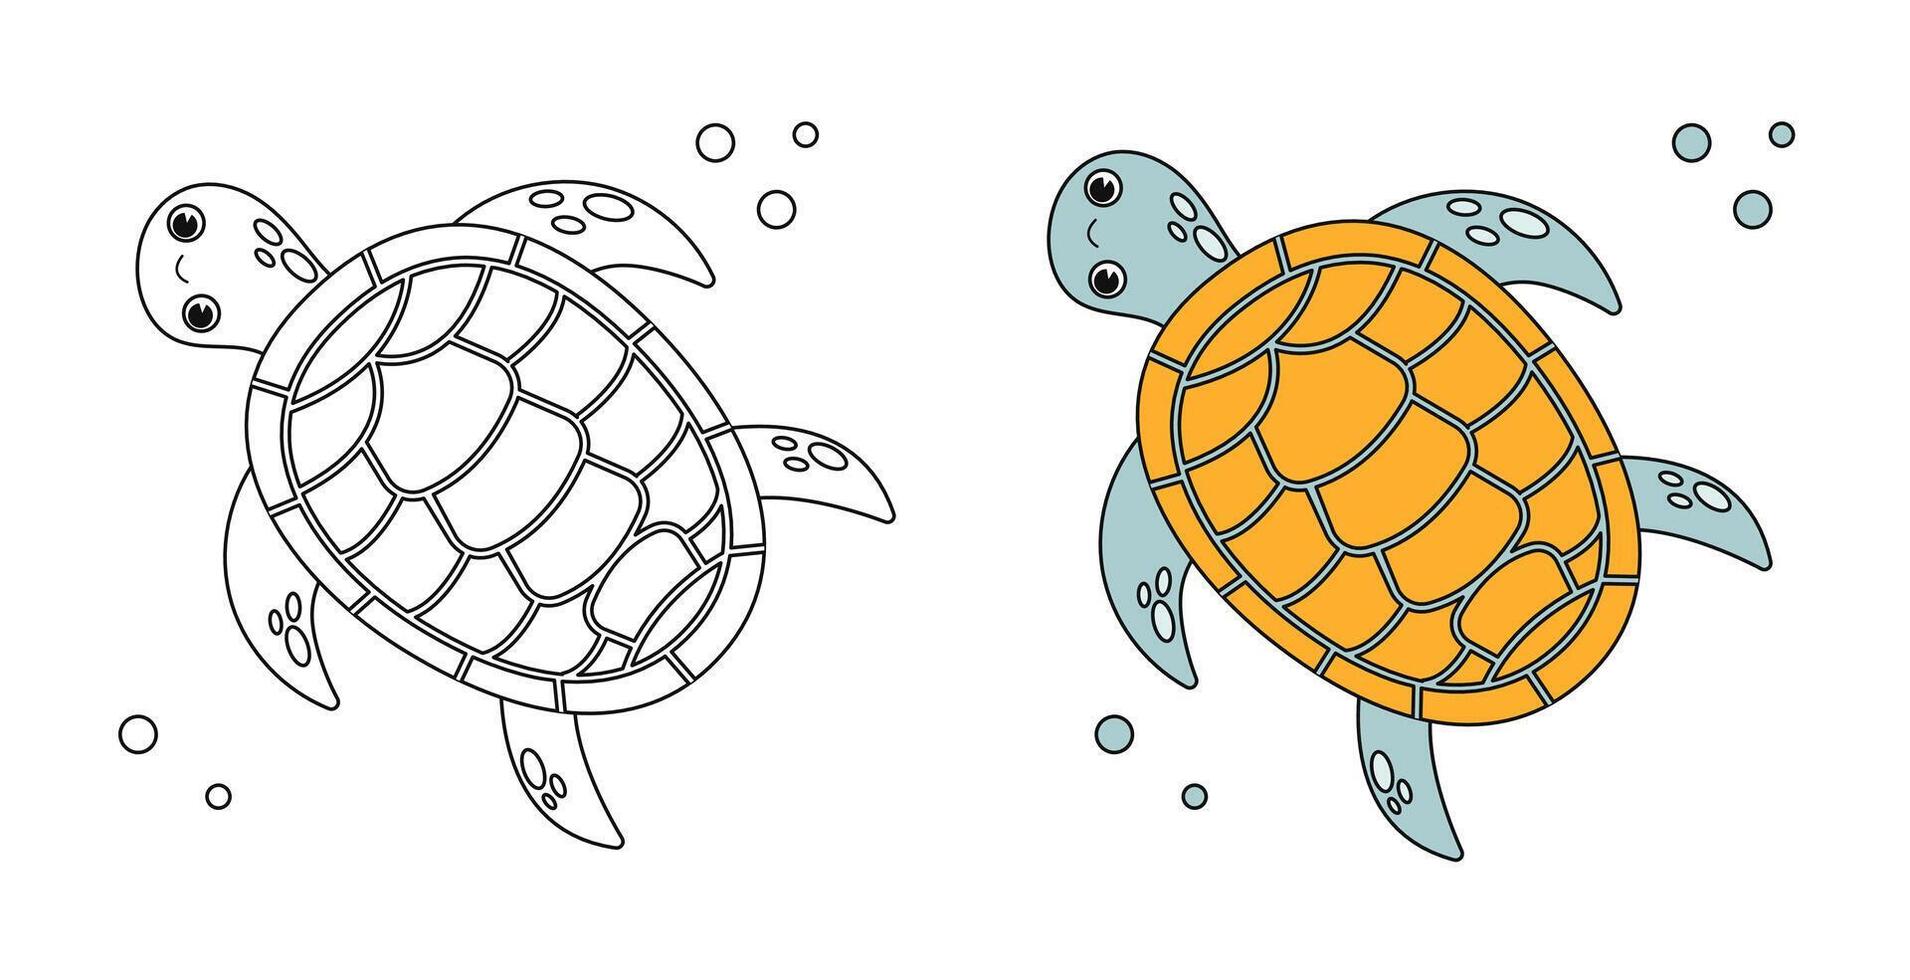 heiter Meer Schildkröte unter Wasser. schwarz und Weiß linear Zeichnung. zum Kinder- Design von Färbung Bücher, Drucke, Poster, Karten, Aufkleber, Rätsel, usw. Vektor Lager Illustrator